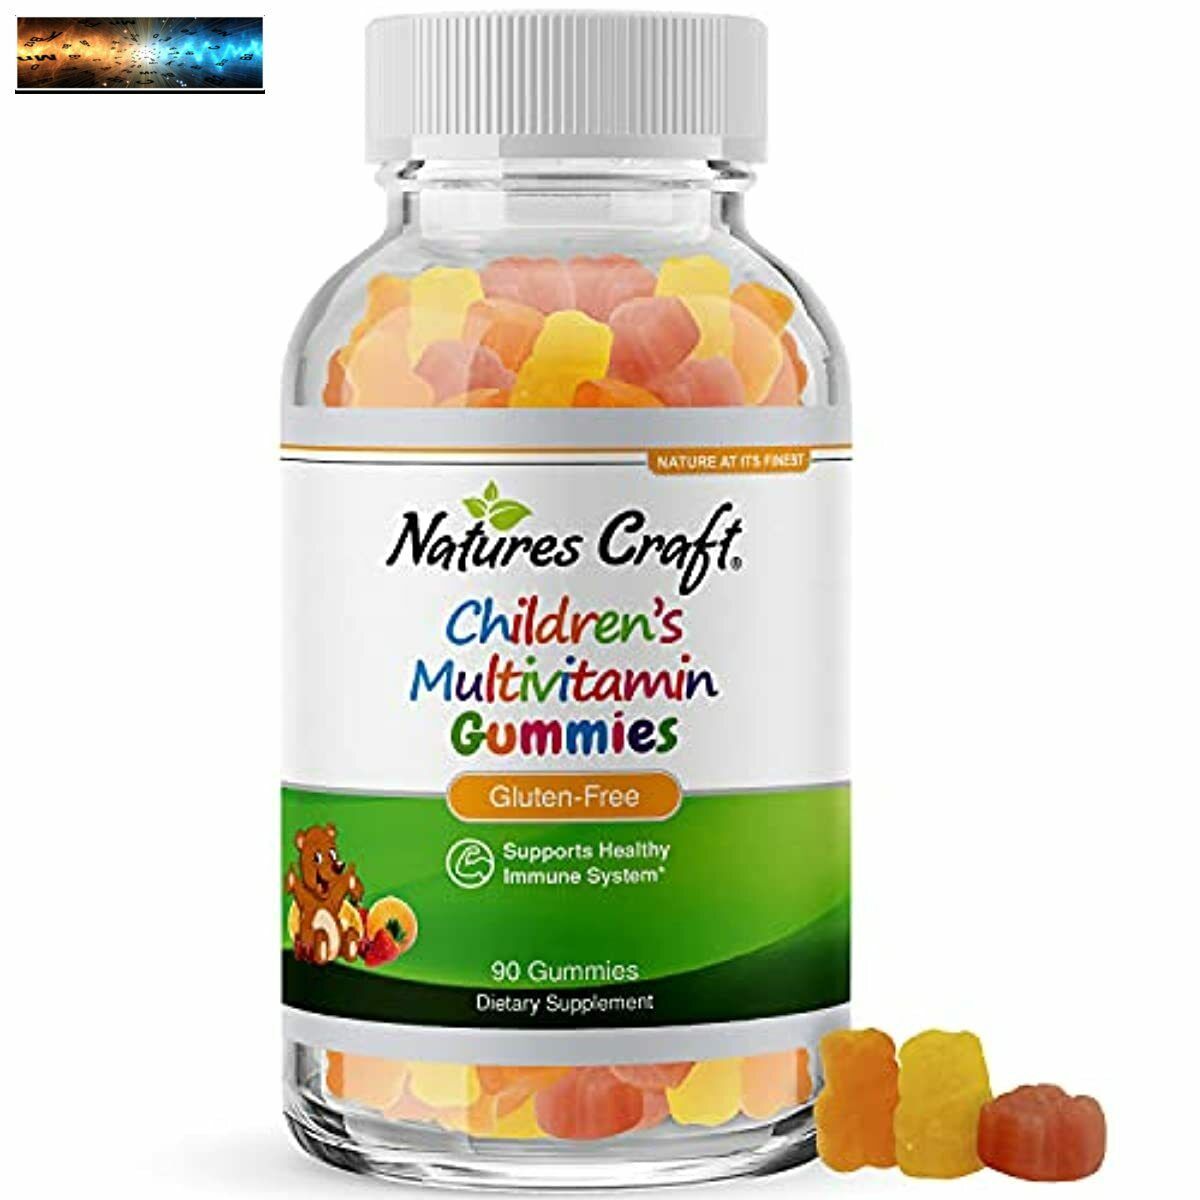 Vitaminas en gomitas para apoyo inmunológico de niños - Suplementos naturales de vitaminas para niños